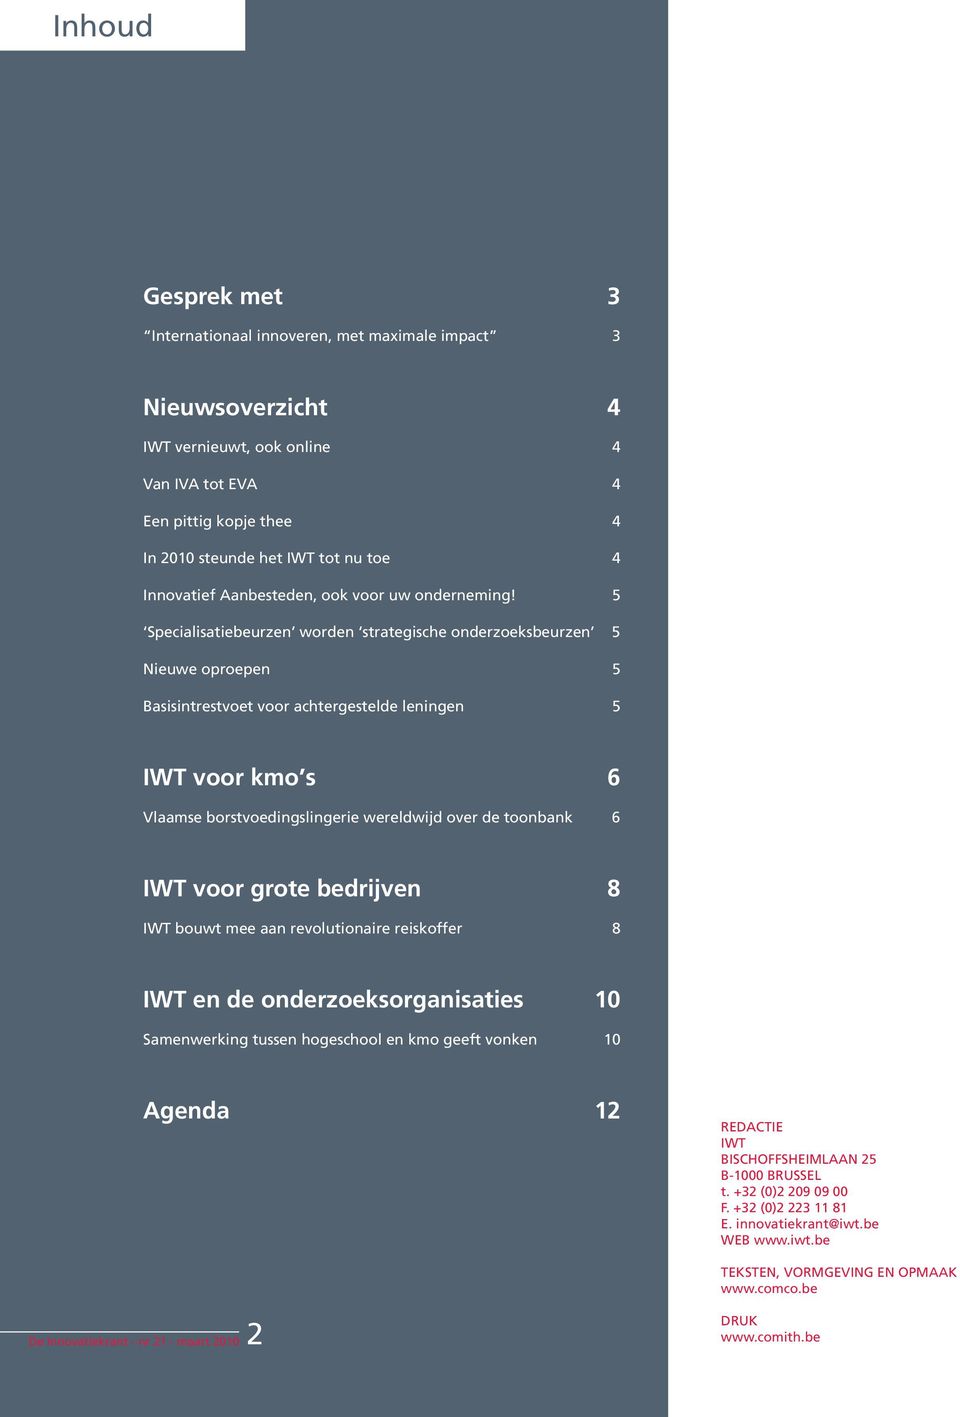 5 Specialisatiebeurzen worden strategische onderzoeksbeurzen 5 Nieuwe oproepen 5 Basisintrestvoet voor achtergestelde leningen 5 IWT voor kmo s 6 Vlaamse borstvoedingslingerie wereldwijd over de